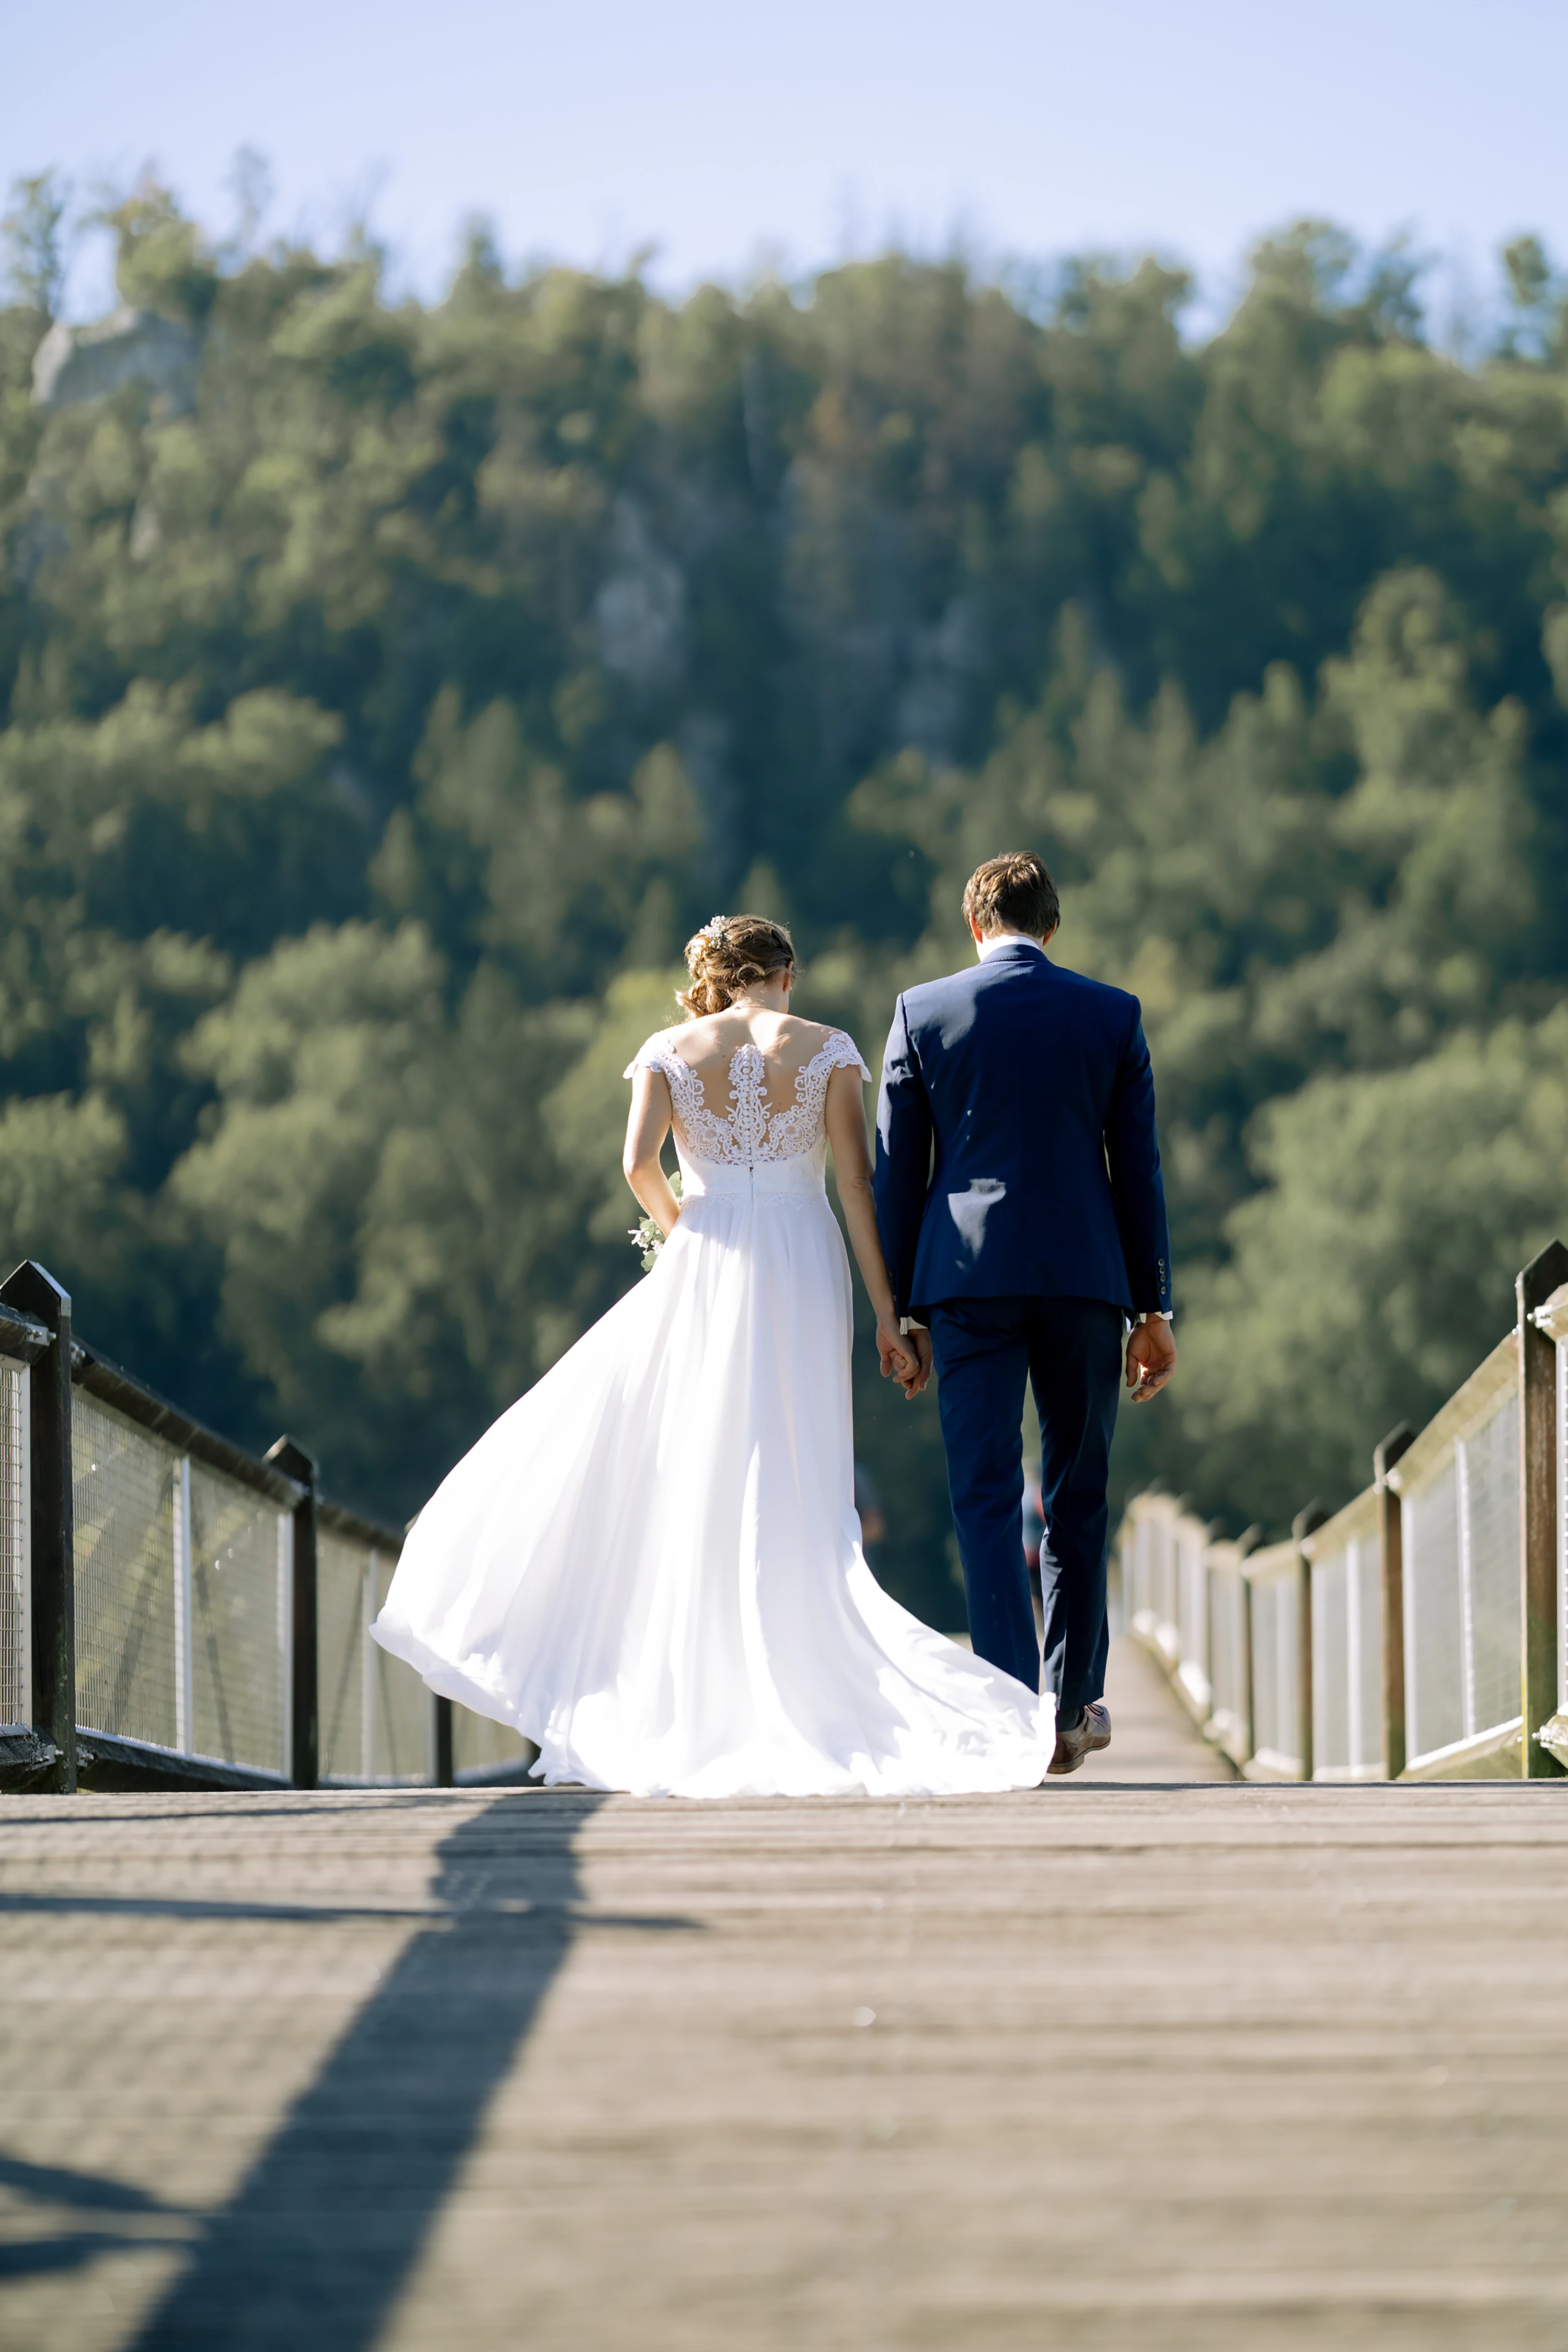 Das Brautpaar läuft auf einer Holzbrücke von der Kamera weg, das Kleid der Braut wird vom Wind gewellt.